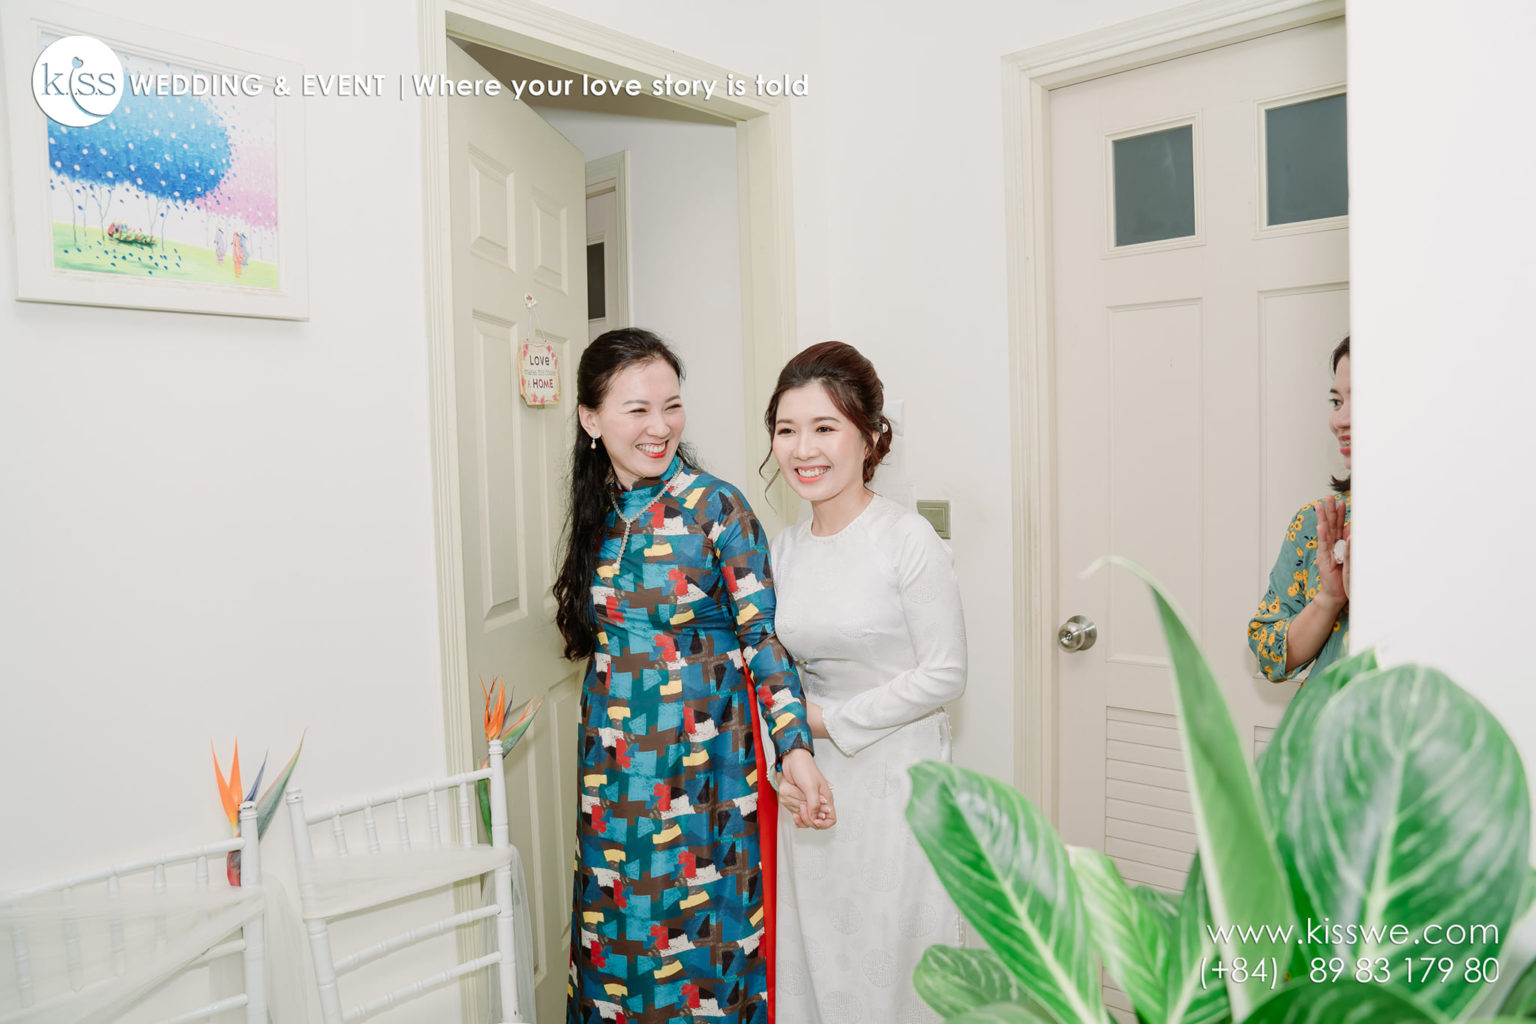 đám cưới online tại nhà cùng với sự góp mặt của vài thành viên trong gia đình